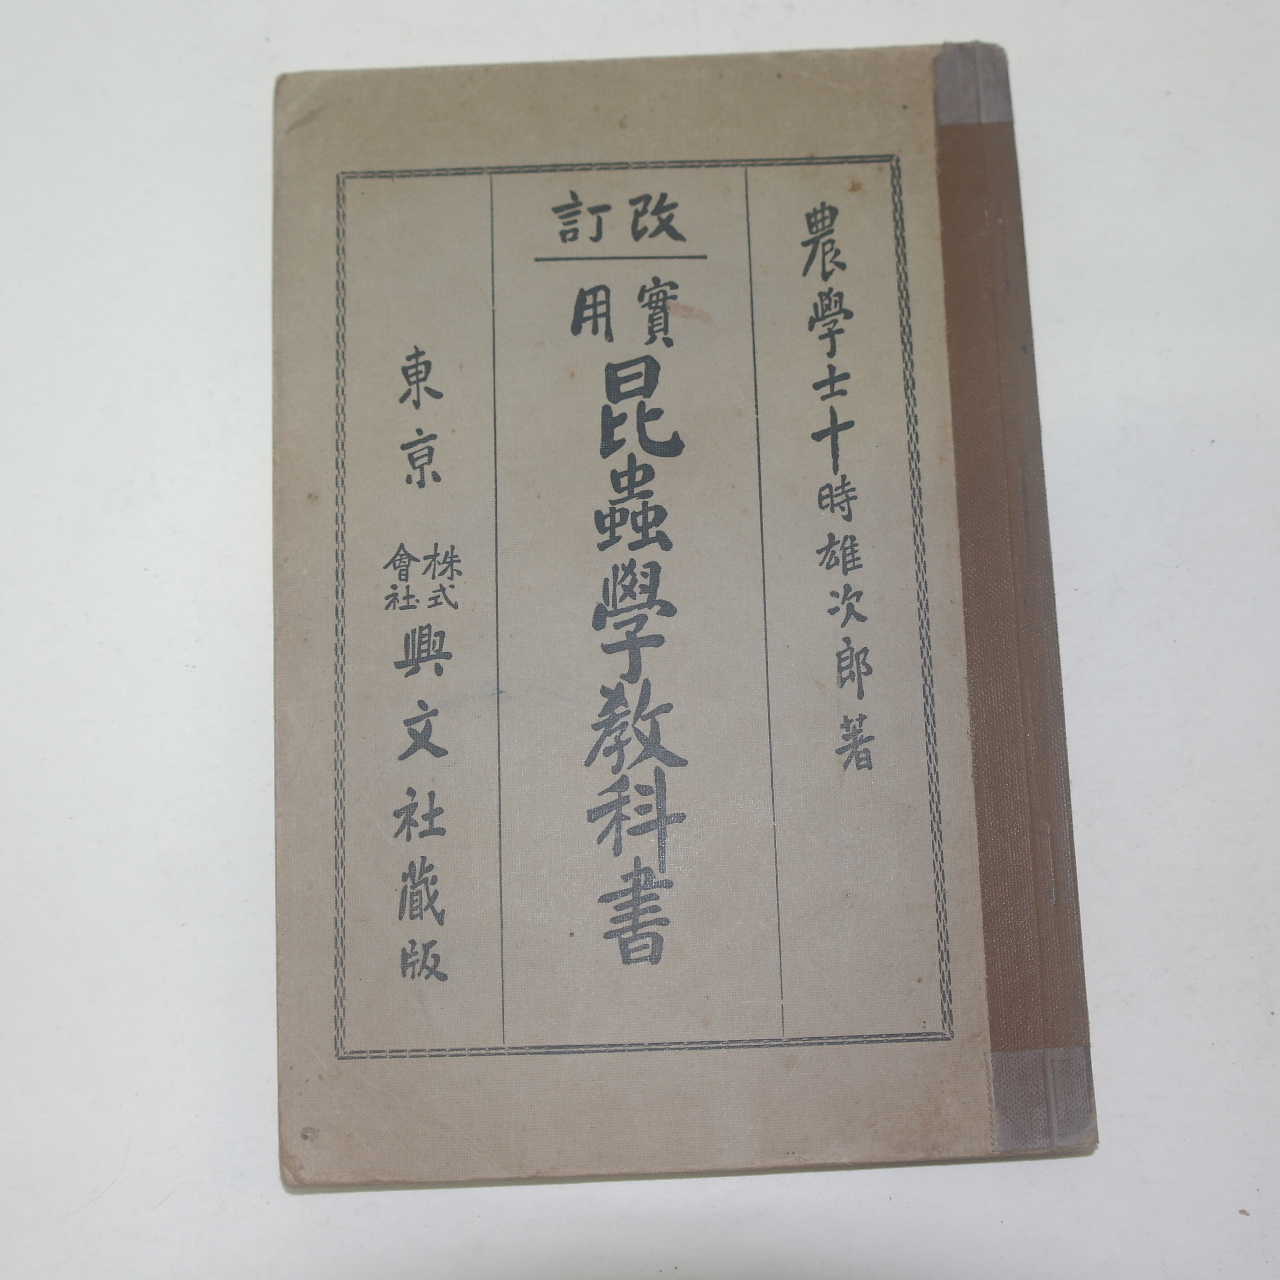 1926년 일본간행 곤충학교과서(昆蟲學敎科書)